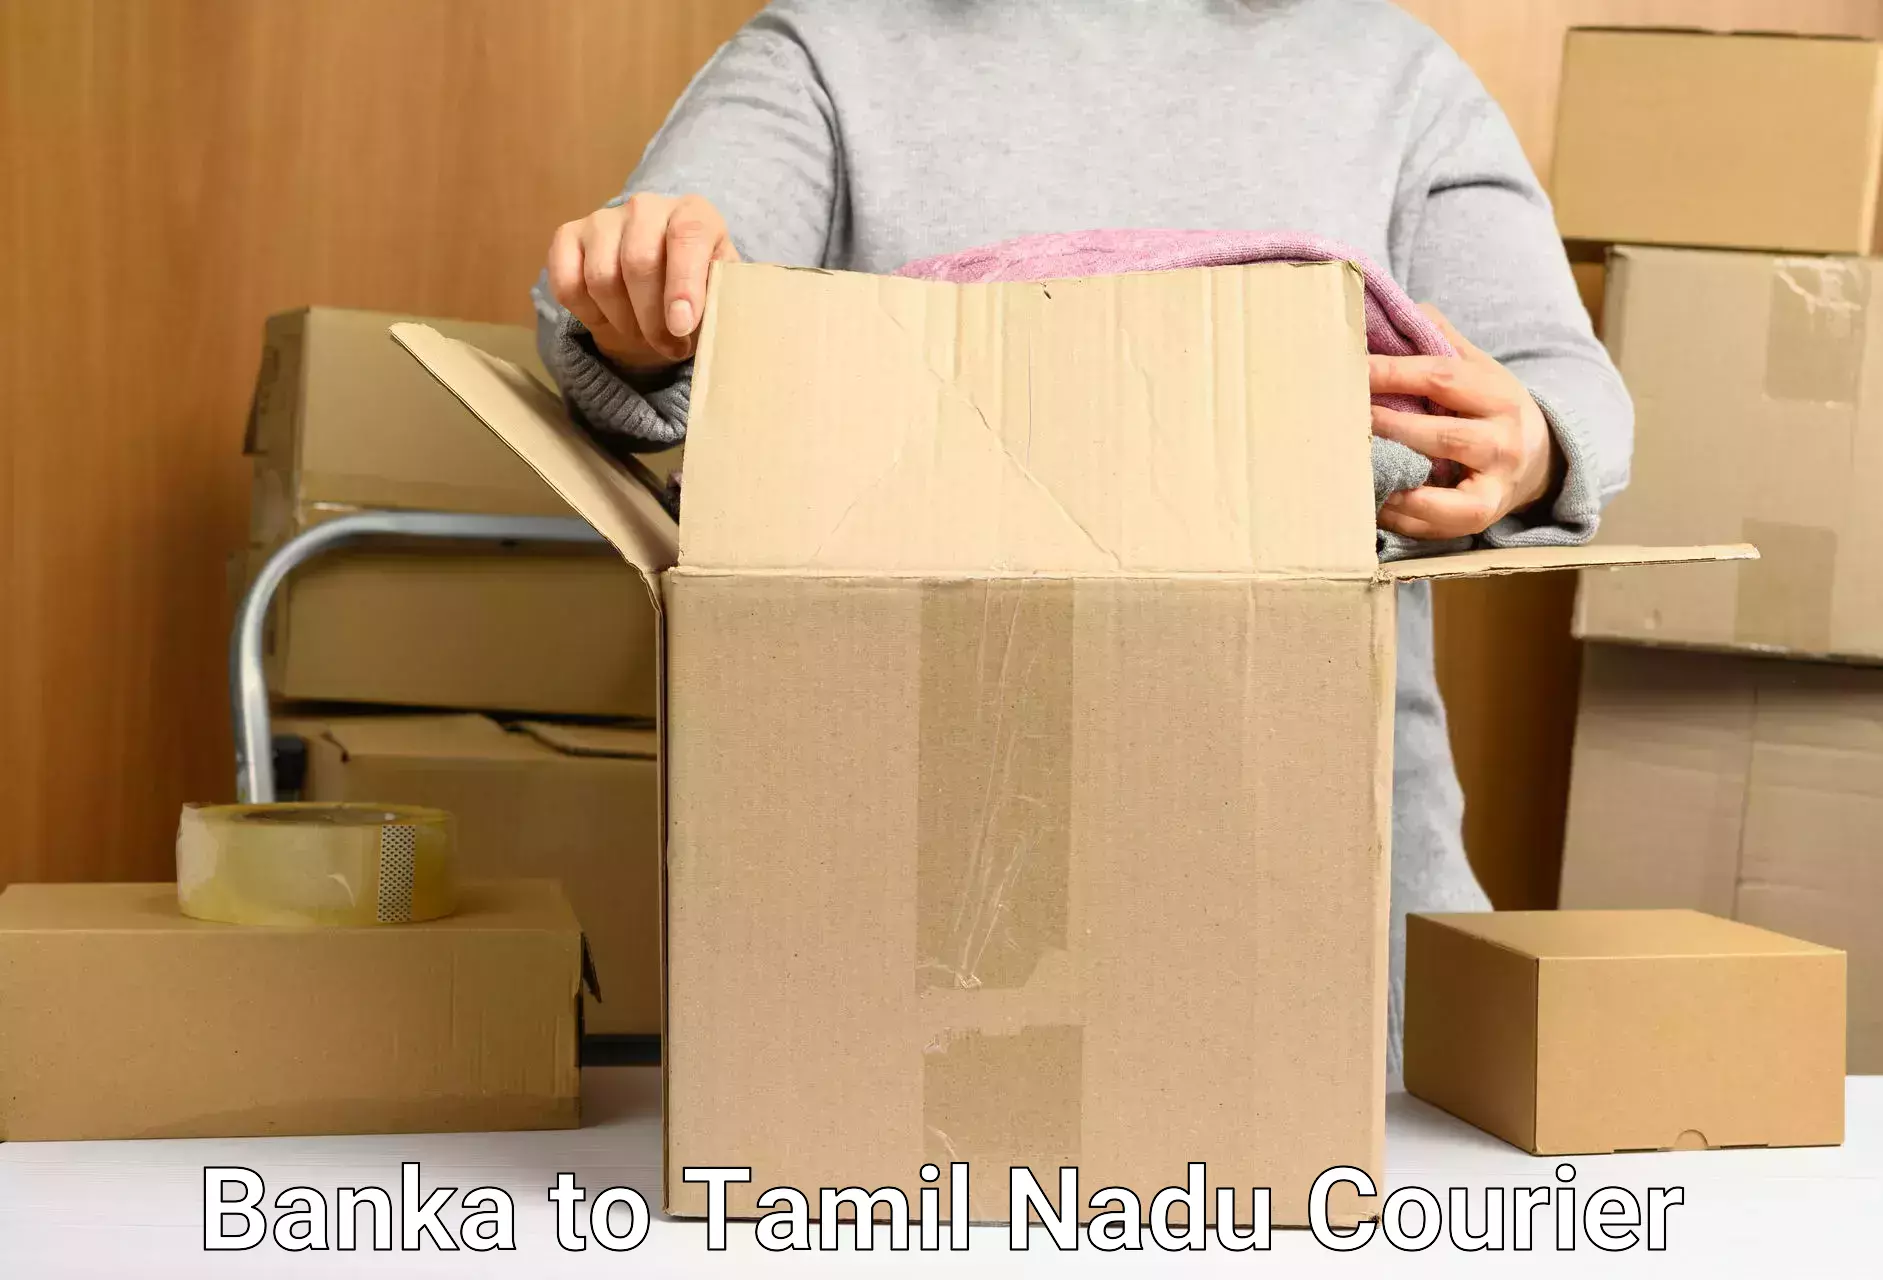 Efficient parcel service Banka to Tiruturaipundi